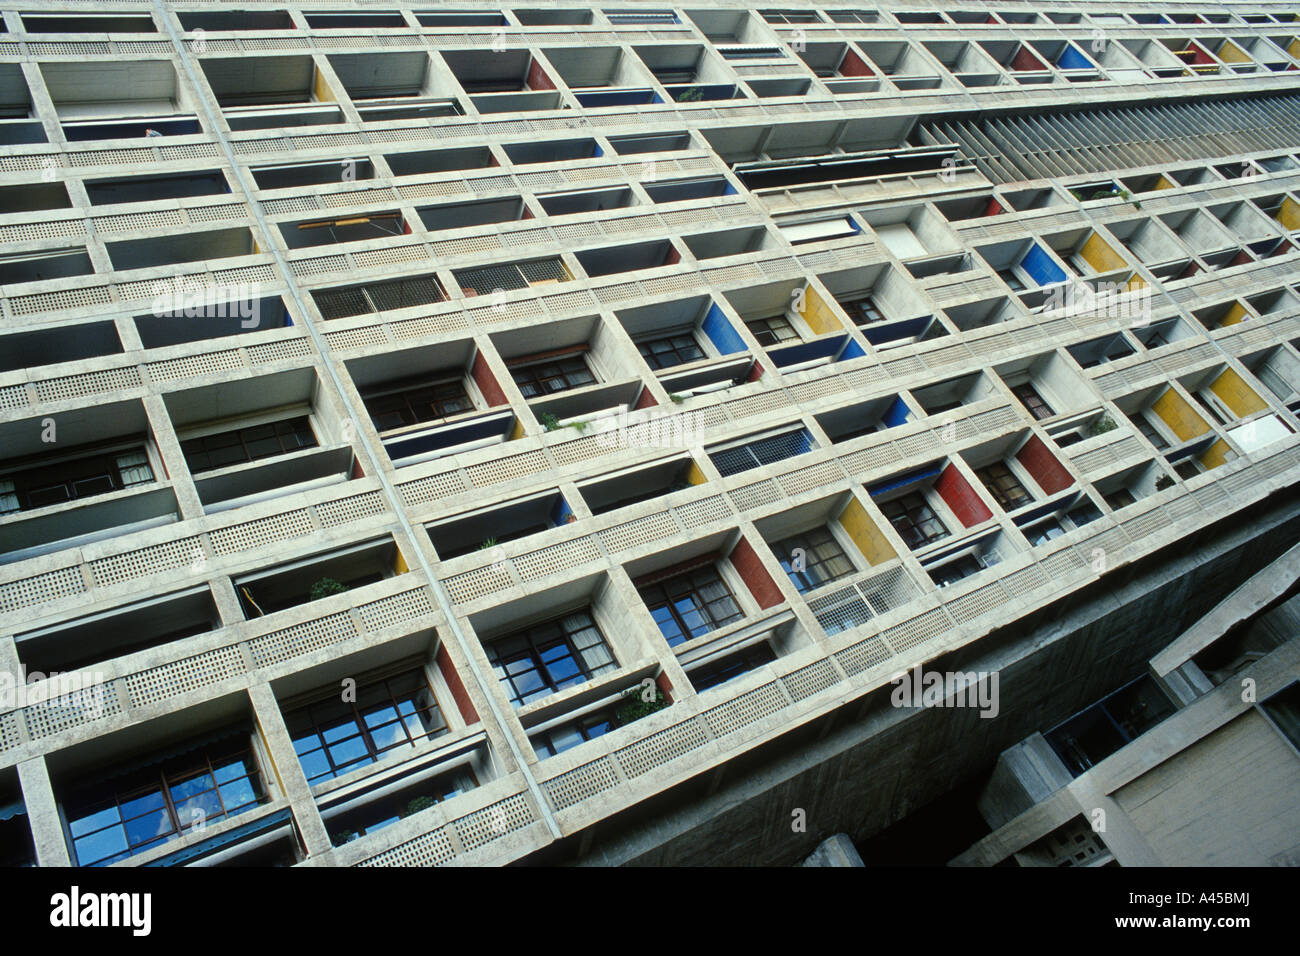 Marseille. France. La Cité radieuse de Marseille alias l'unité d'habitation de Marseille. Immeuble en béton de 1952 de le Corbusier. Banque D'Images